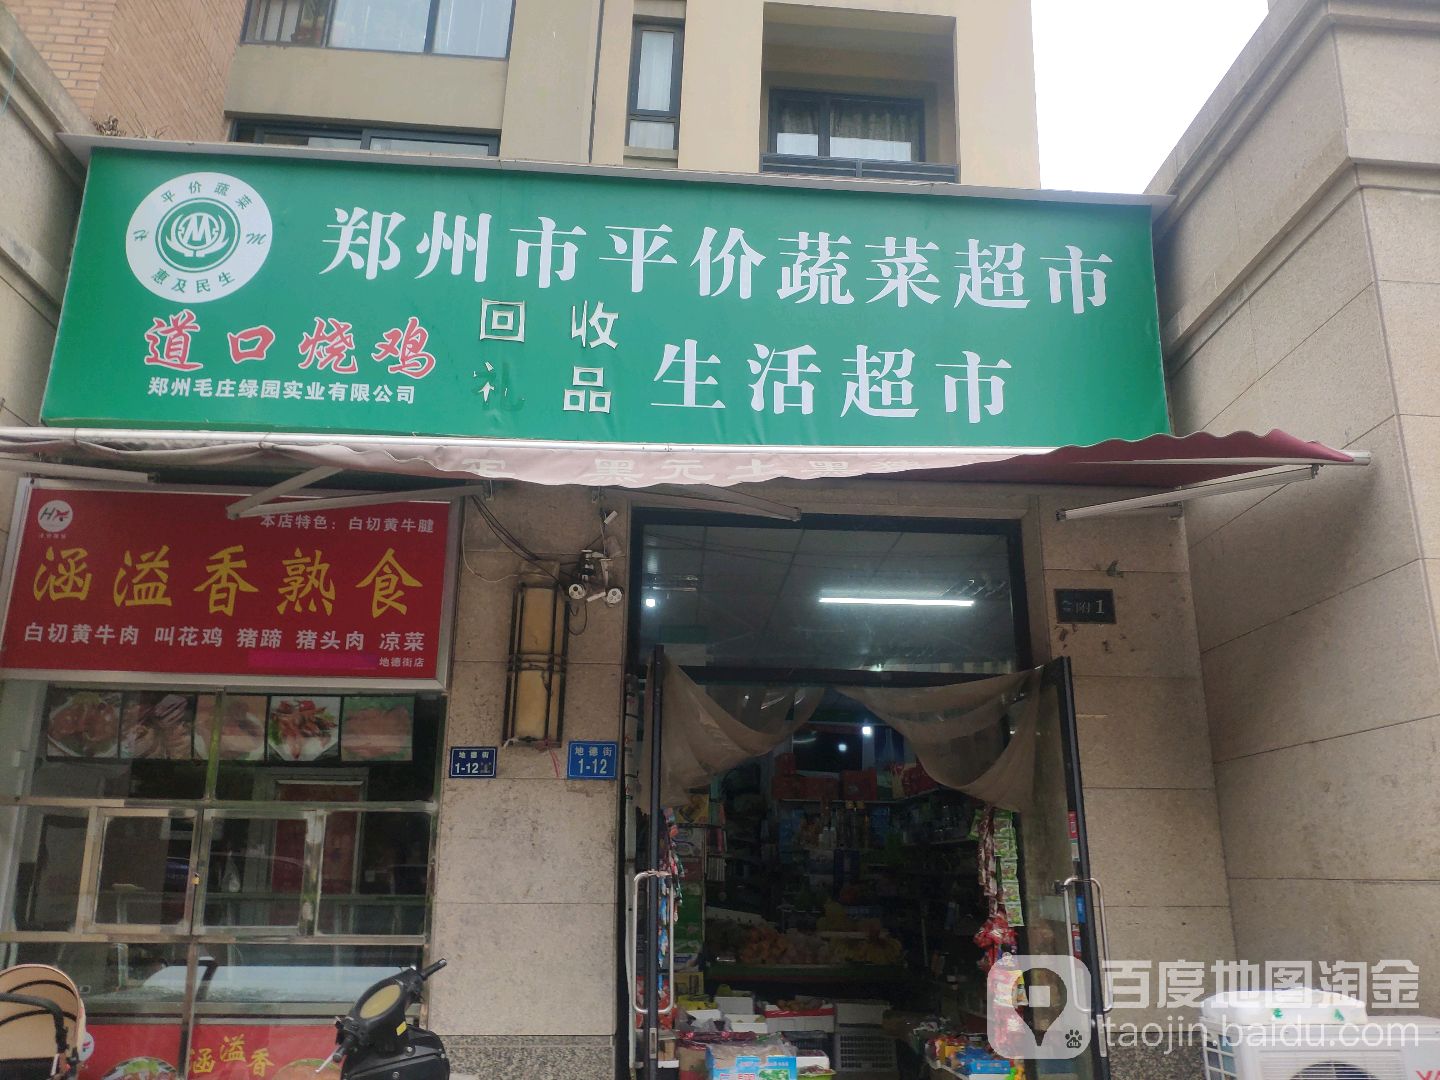 郑州平安价蔬菜超市(地德街店)